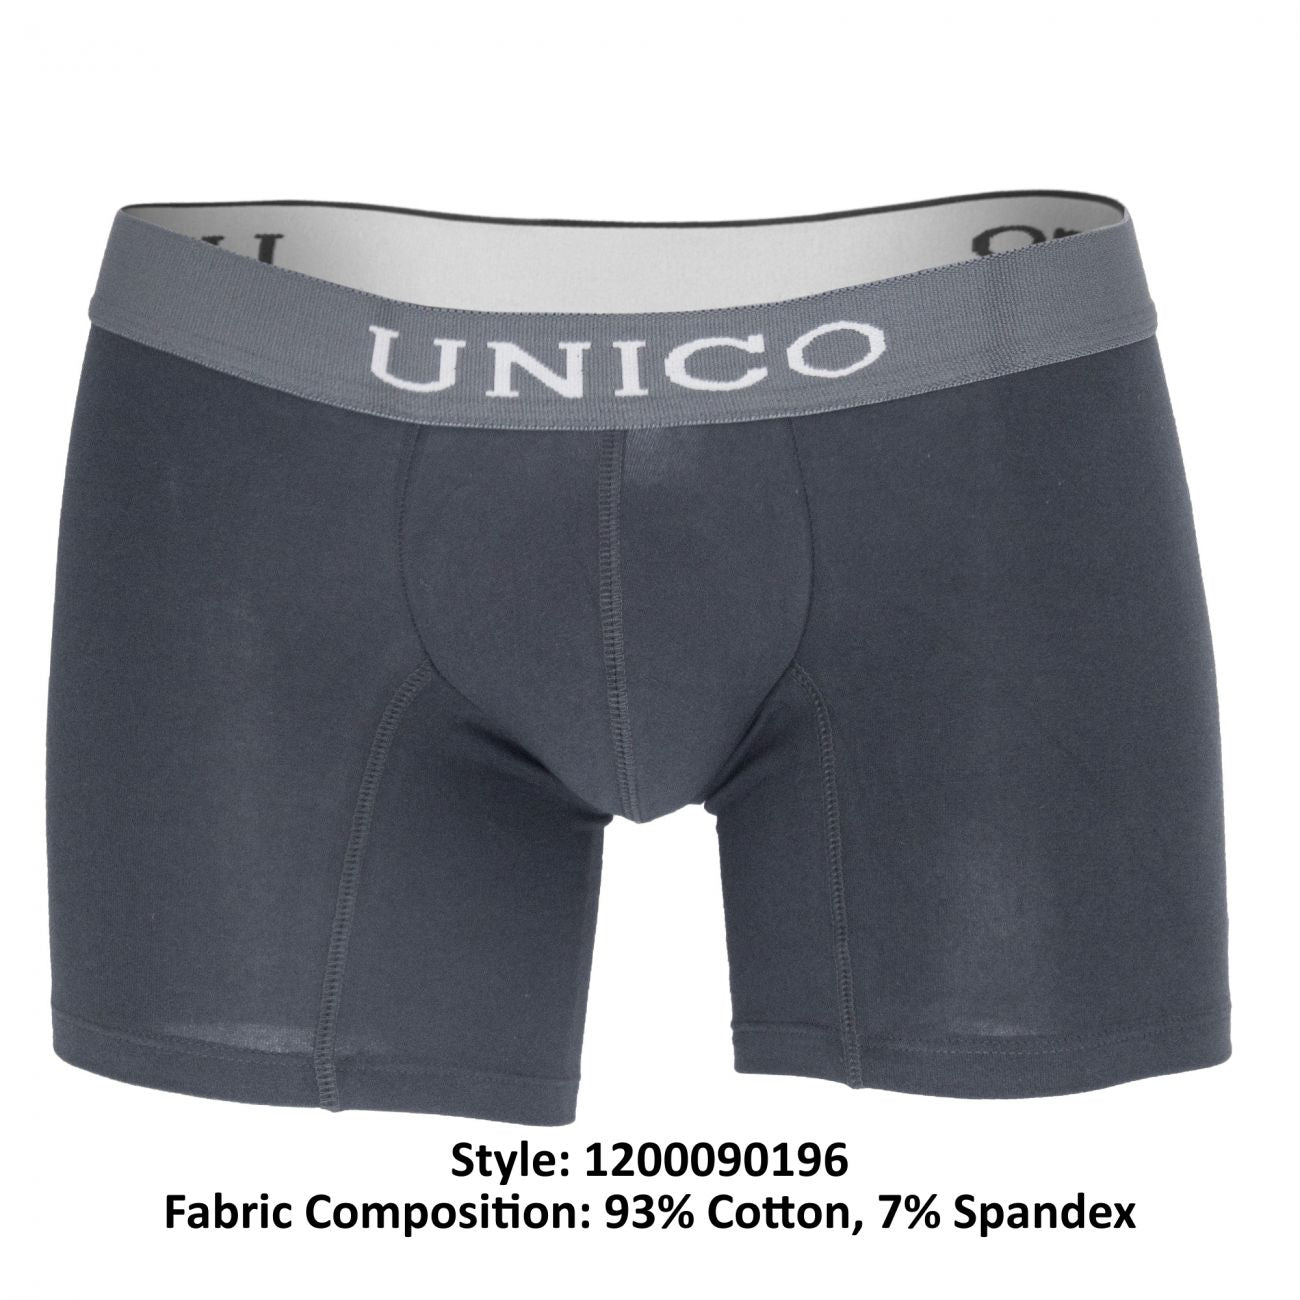 Unico 1200090196 Boxer Briefs Asfalto Gray